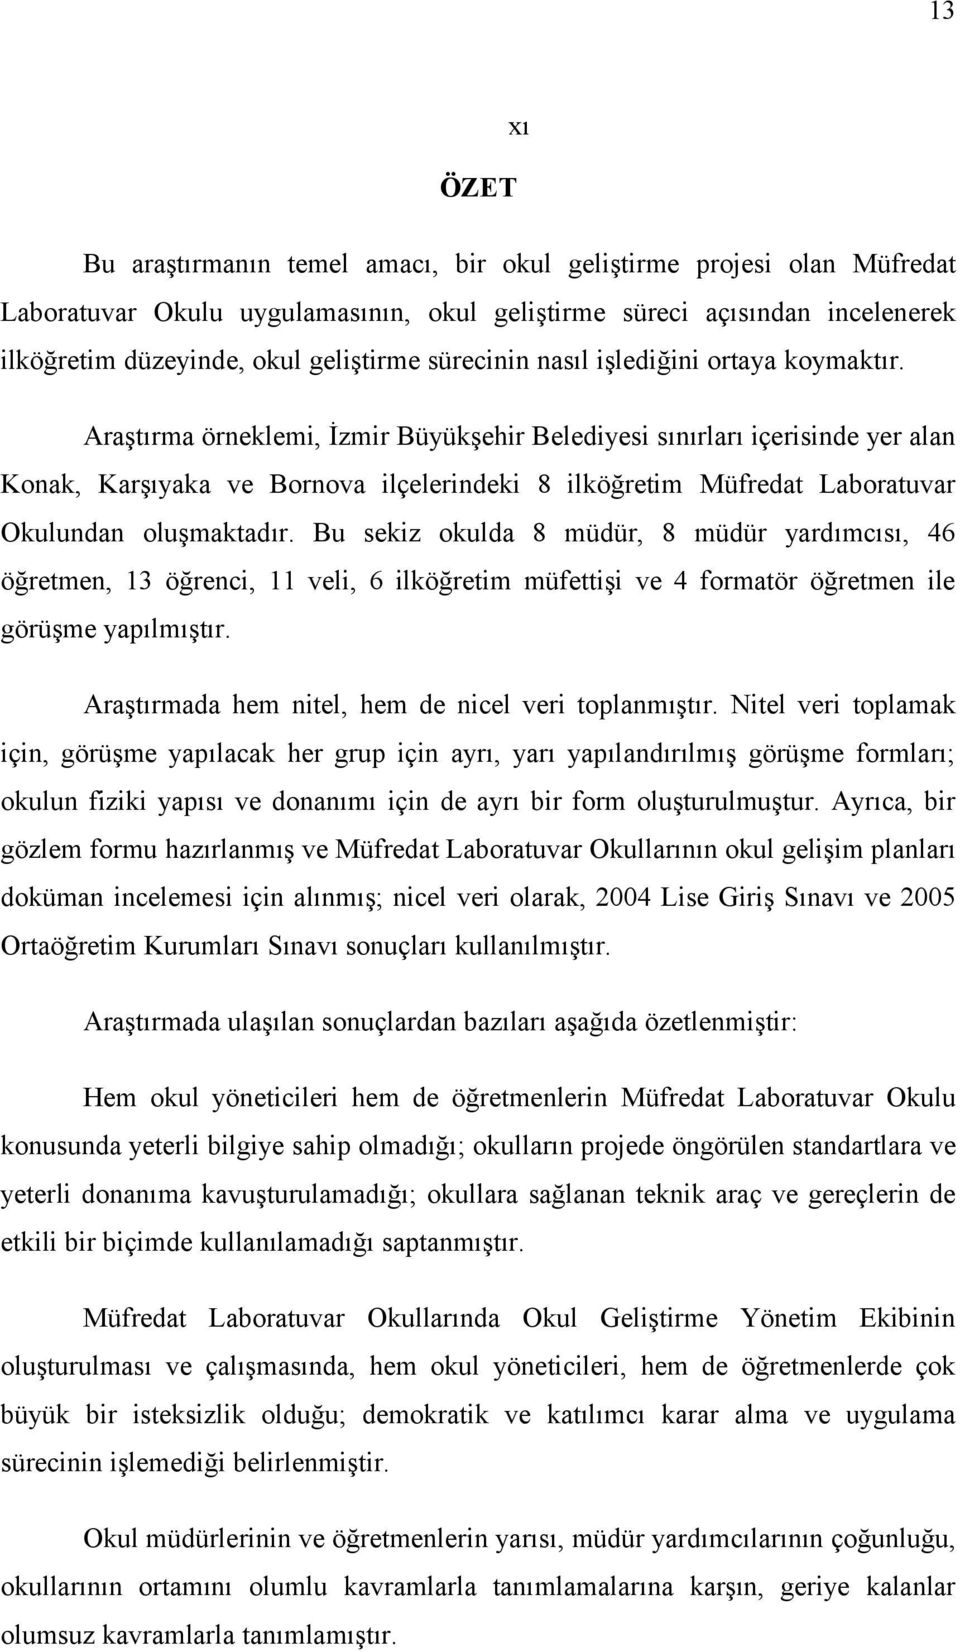 Araştırma örneklemi, İzmir Büyükşehir Belediyesi sınırları içerisinde yer alan Konak, Karşıyaka ve Bornova ilçelerindeki 8 ilköğretim Müfredat Laboratuvar Okulundan oluşmaktadır.